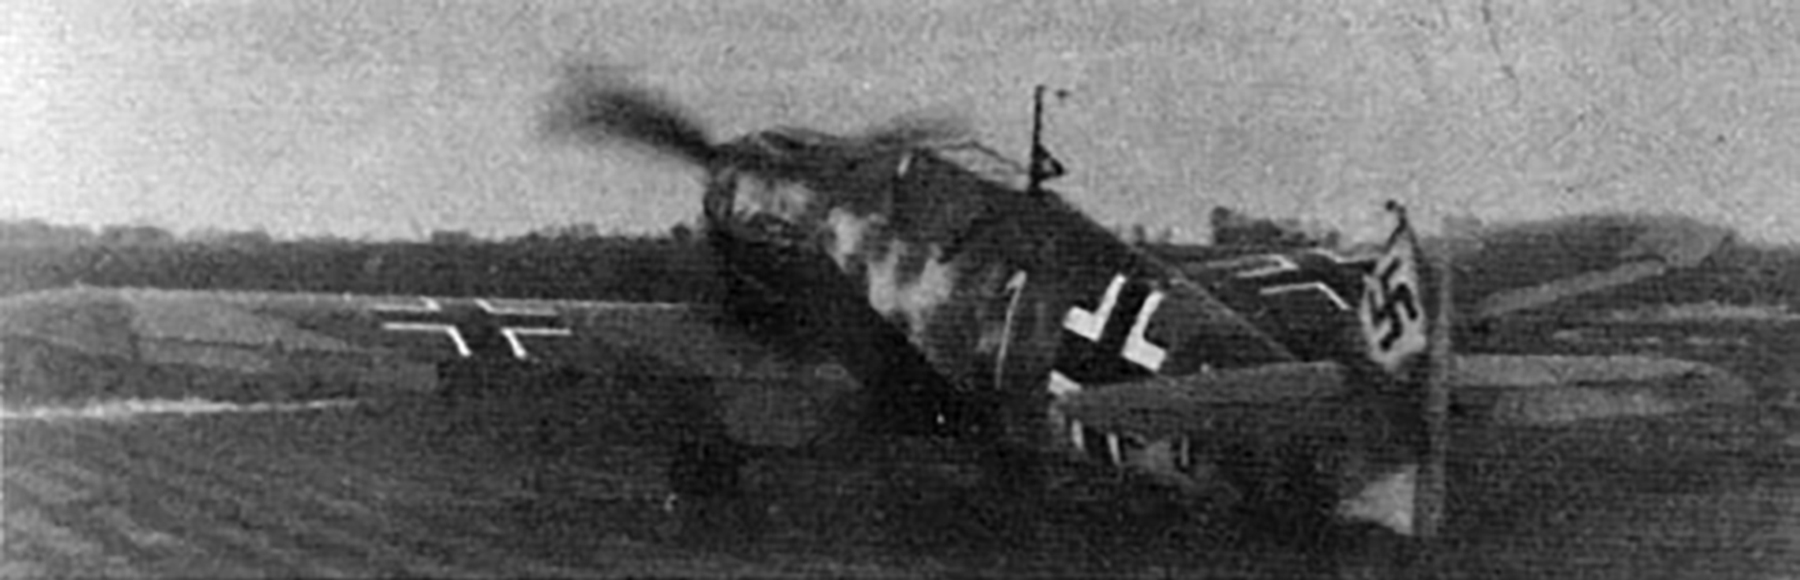 Messerschmitt Bf 109F2 4.JG2 White 1 Egon Mayer WNr 6720 France 1941 04